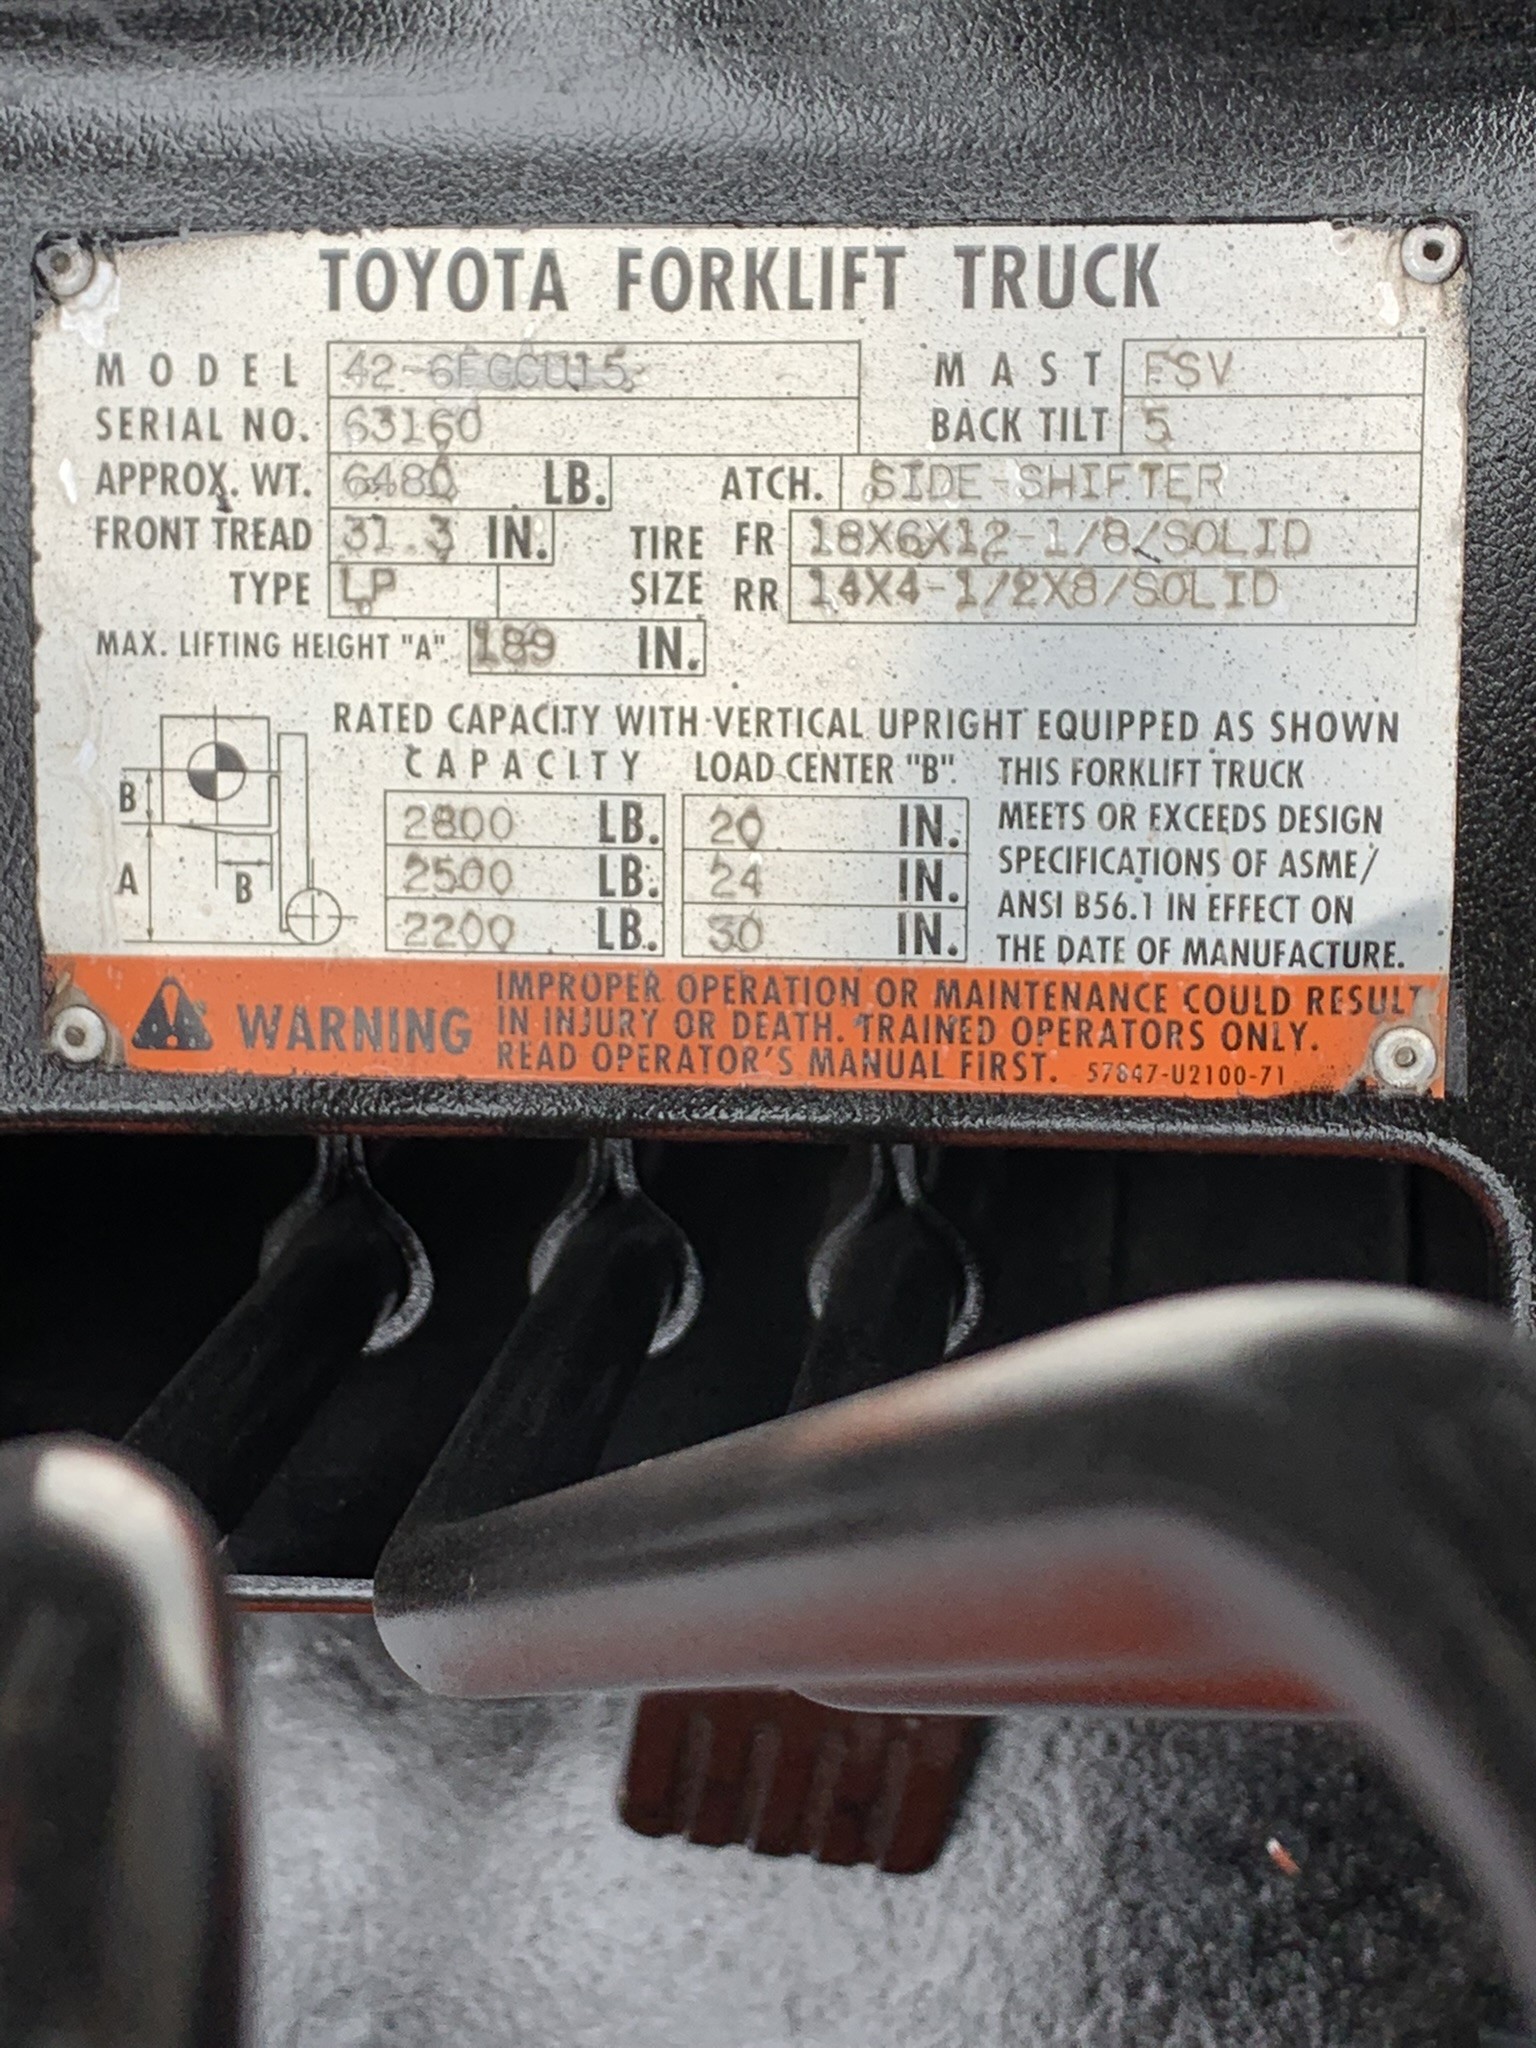 Model 42-6FGCU12 orange toyota forklift with serial number 63160 for sale